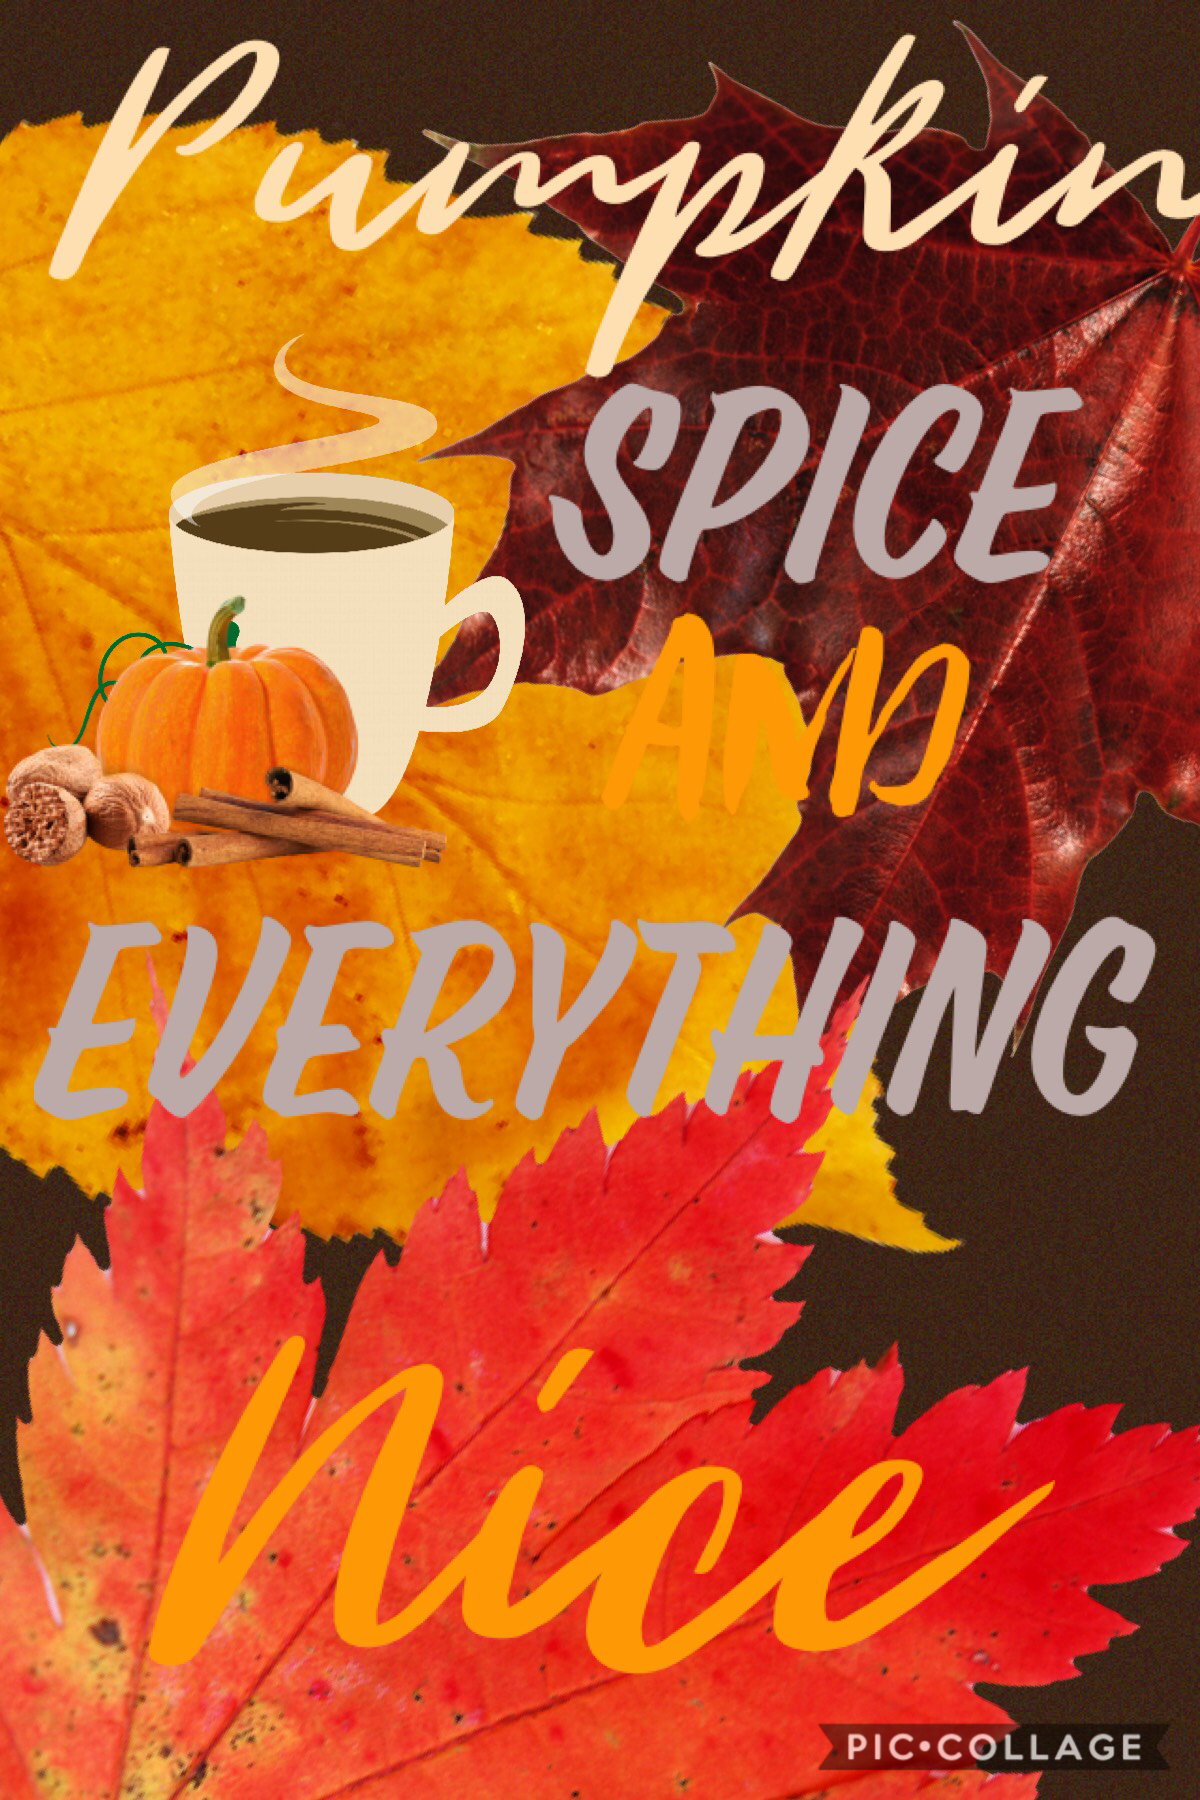 Fall Feelings are up! Just got a pumpkin spice latte from my boyfriend. So sweet!!